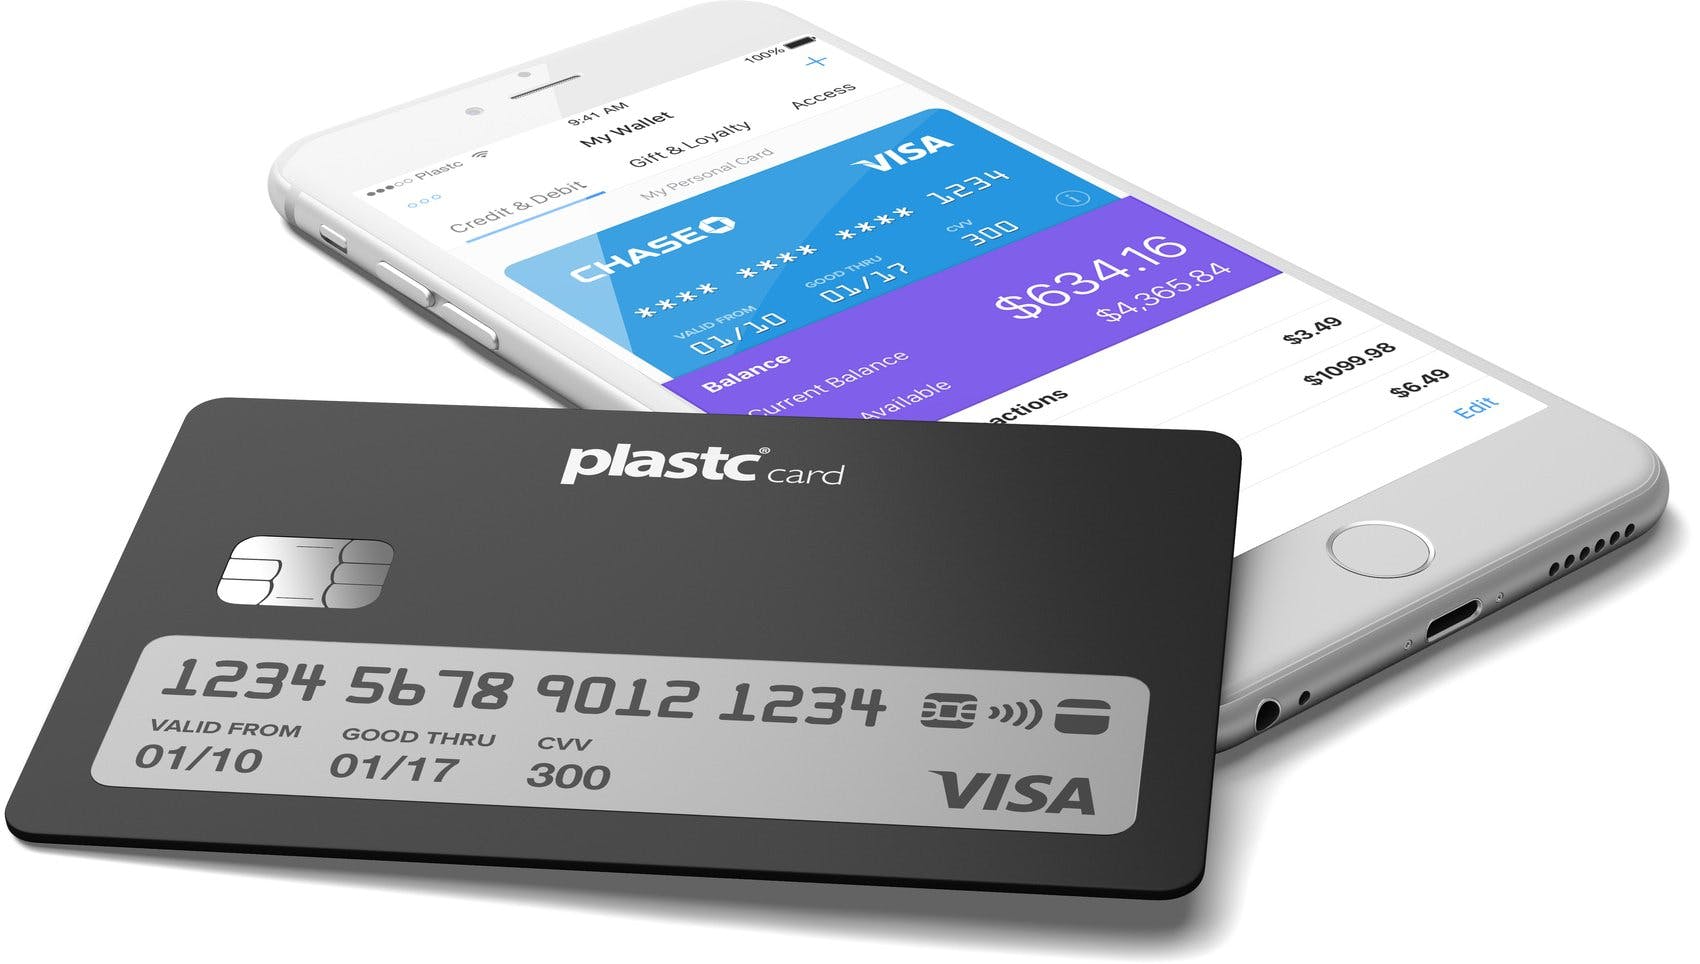 Plastc Card media 1